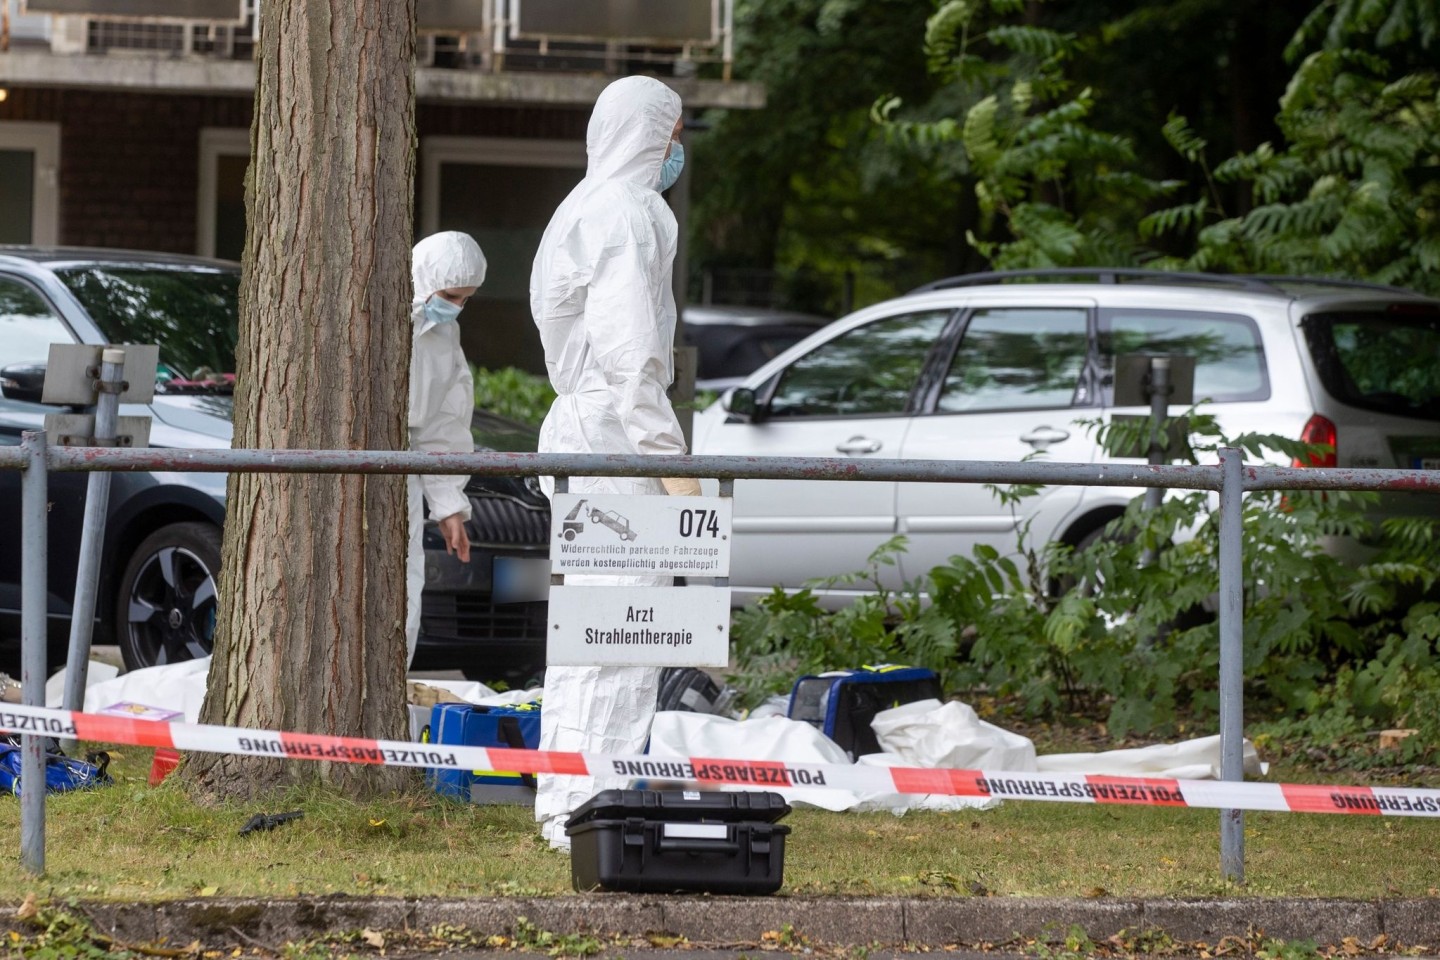 Mitarbeiter der Spurensicherung sind am Tatort von zwei Toten auf dem Gelände eines Krankhauses im Einsatz.